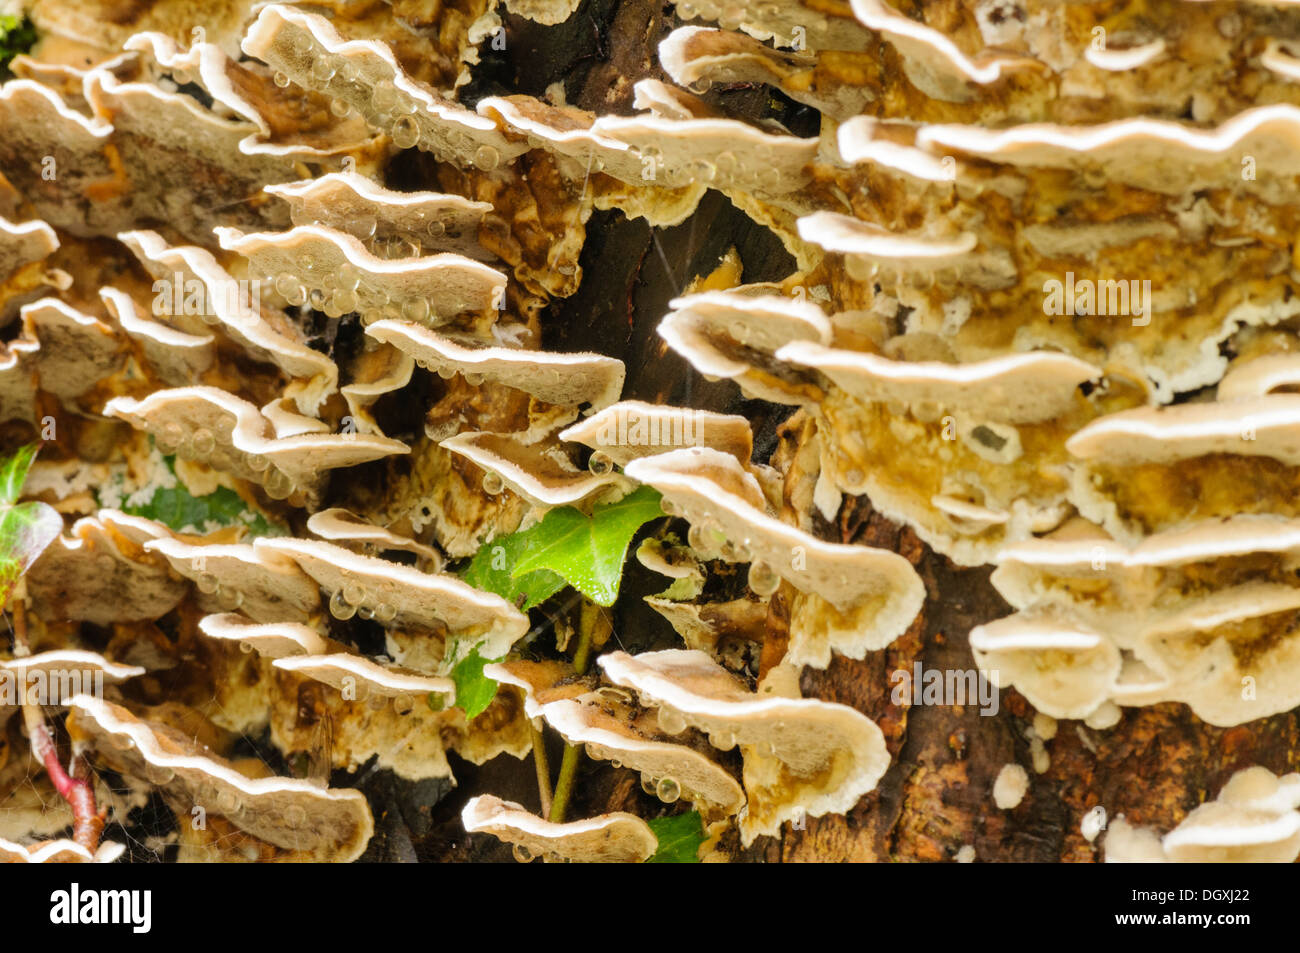 Zitternden Merulius (Merulius Tremellosus, Phlebia Tremellosa), eine gallertartige Halterung Pilz auf verrottendem Holz gefunden Stockfoto